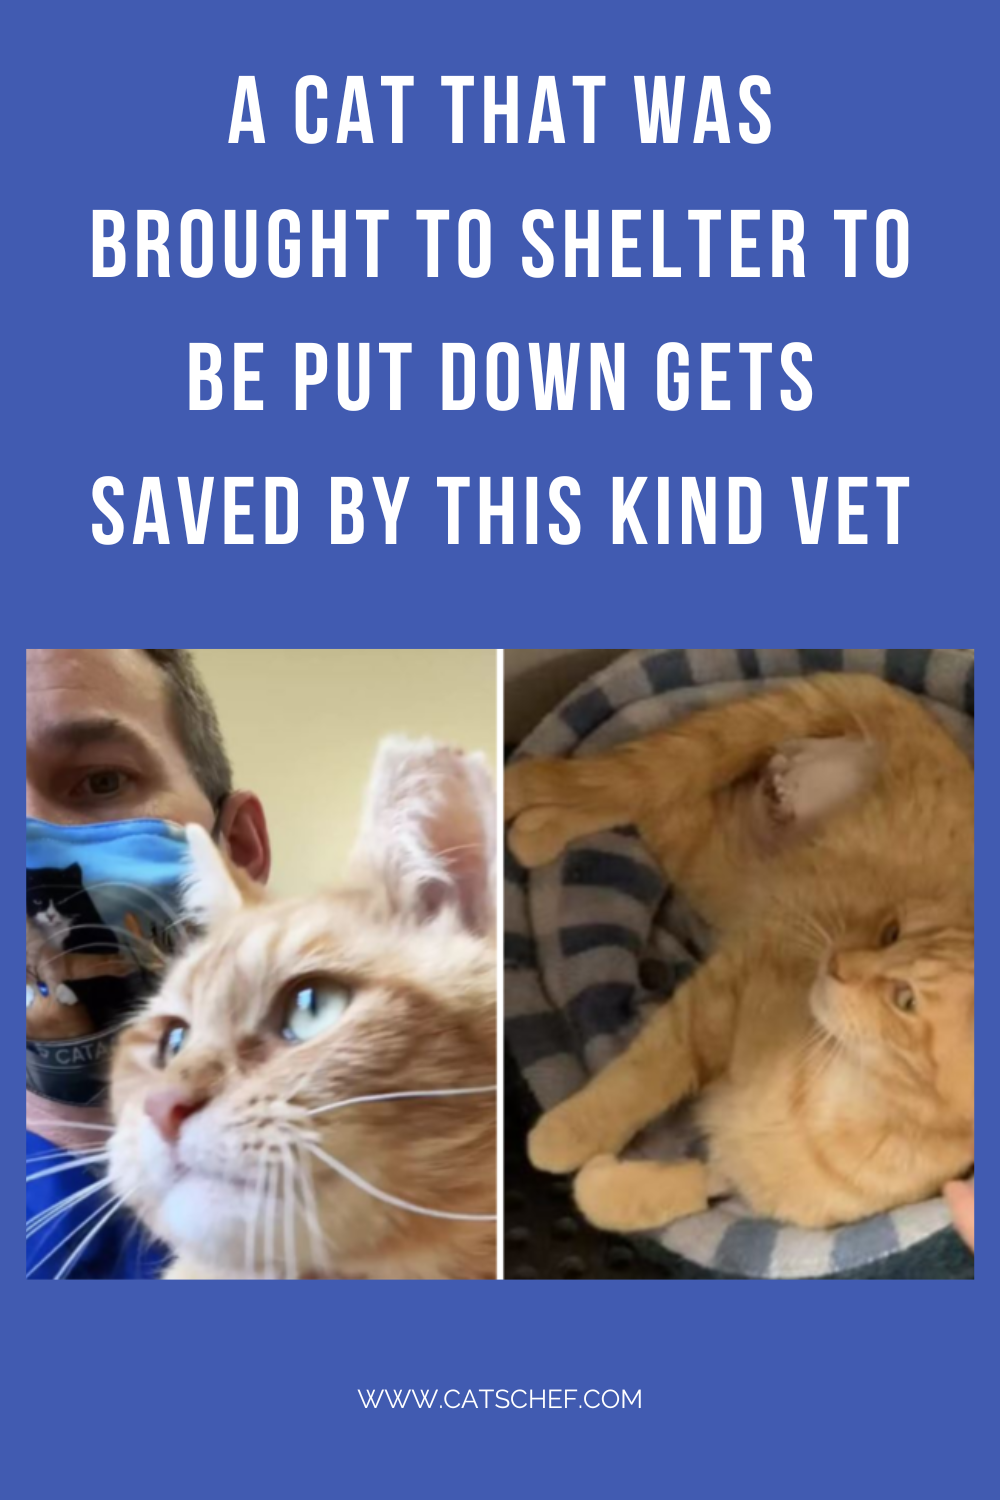 Uyutulmak Üzere Barınağa Getirilen Bir Kedi Bu Nazik Veteriner Tarafından Kurtarıldı